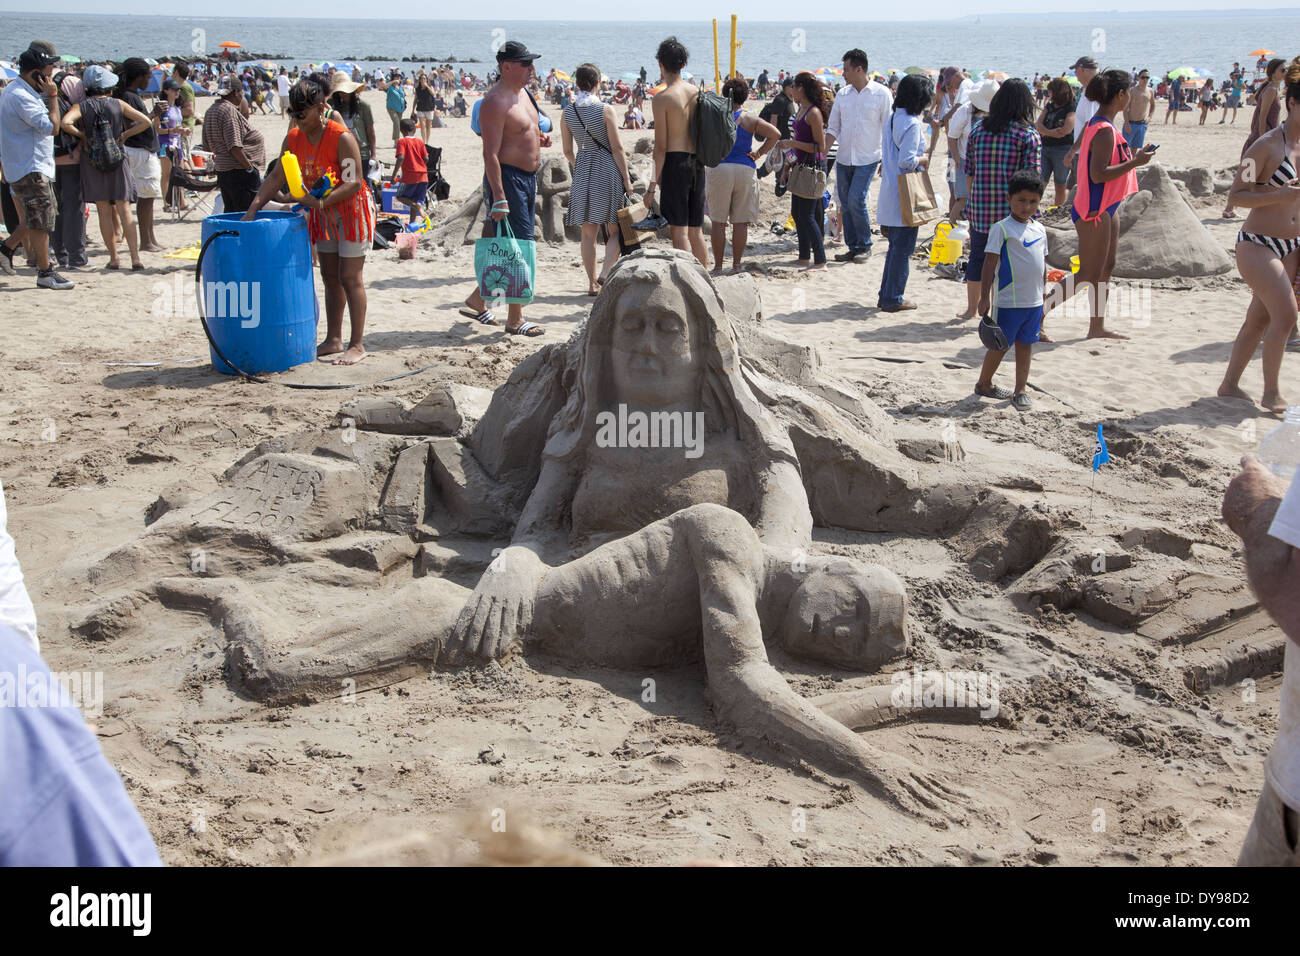 Jährliche Sandburg bauen Wettbewerb am Strand von Coney Island, Brooklyn, NY. Stockfoto